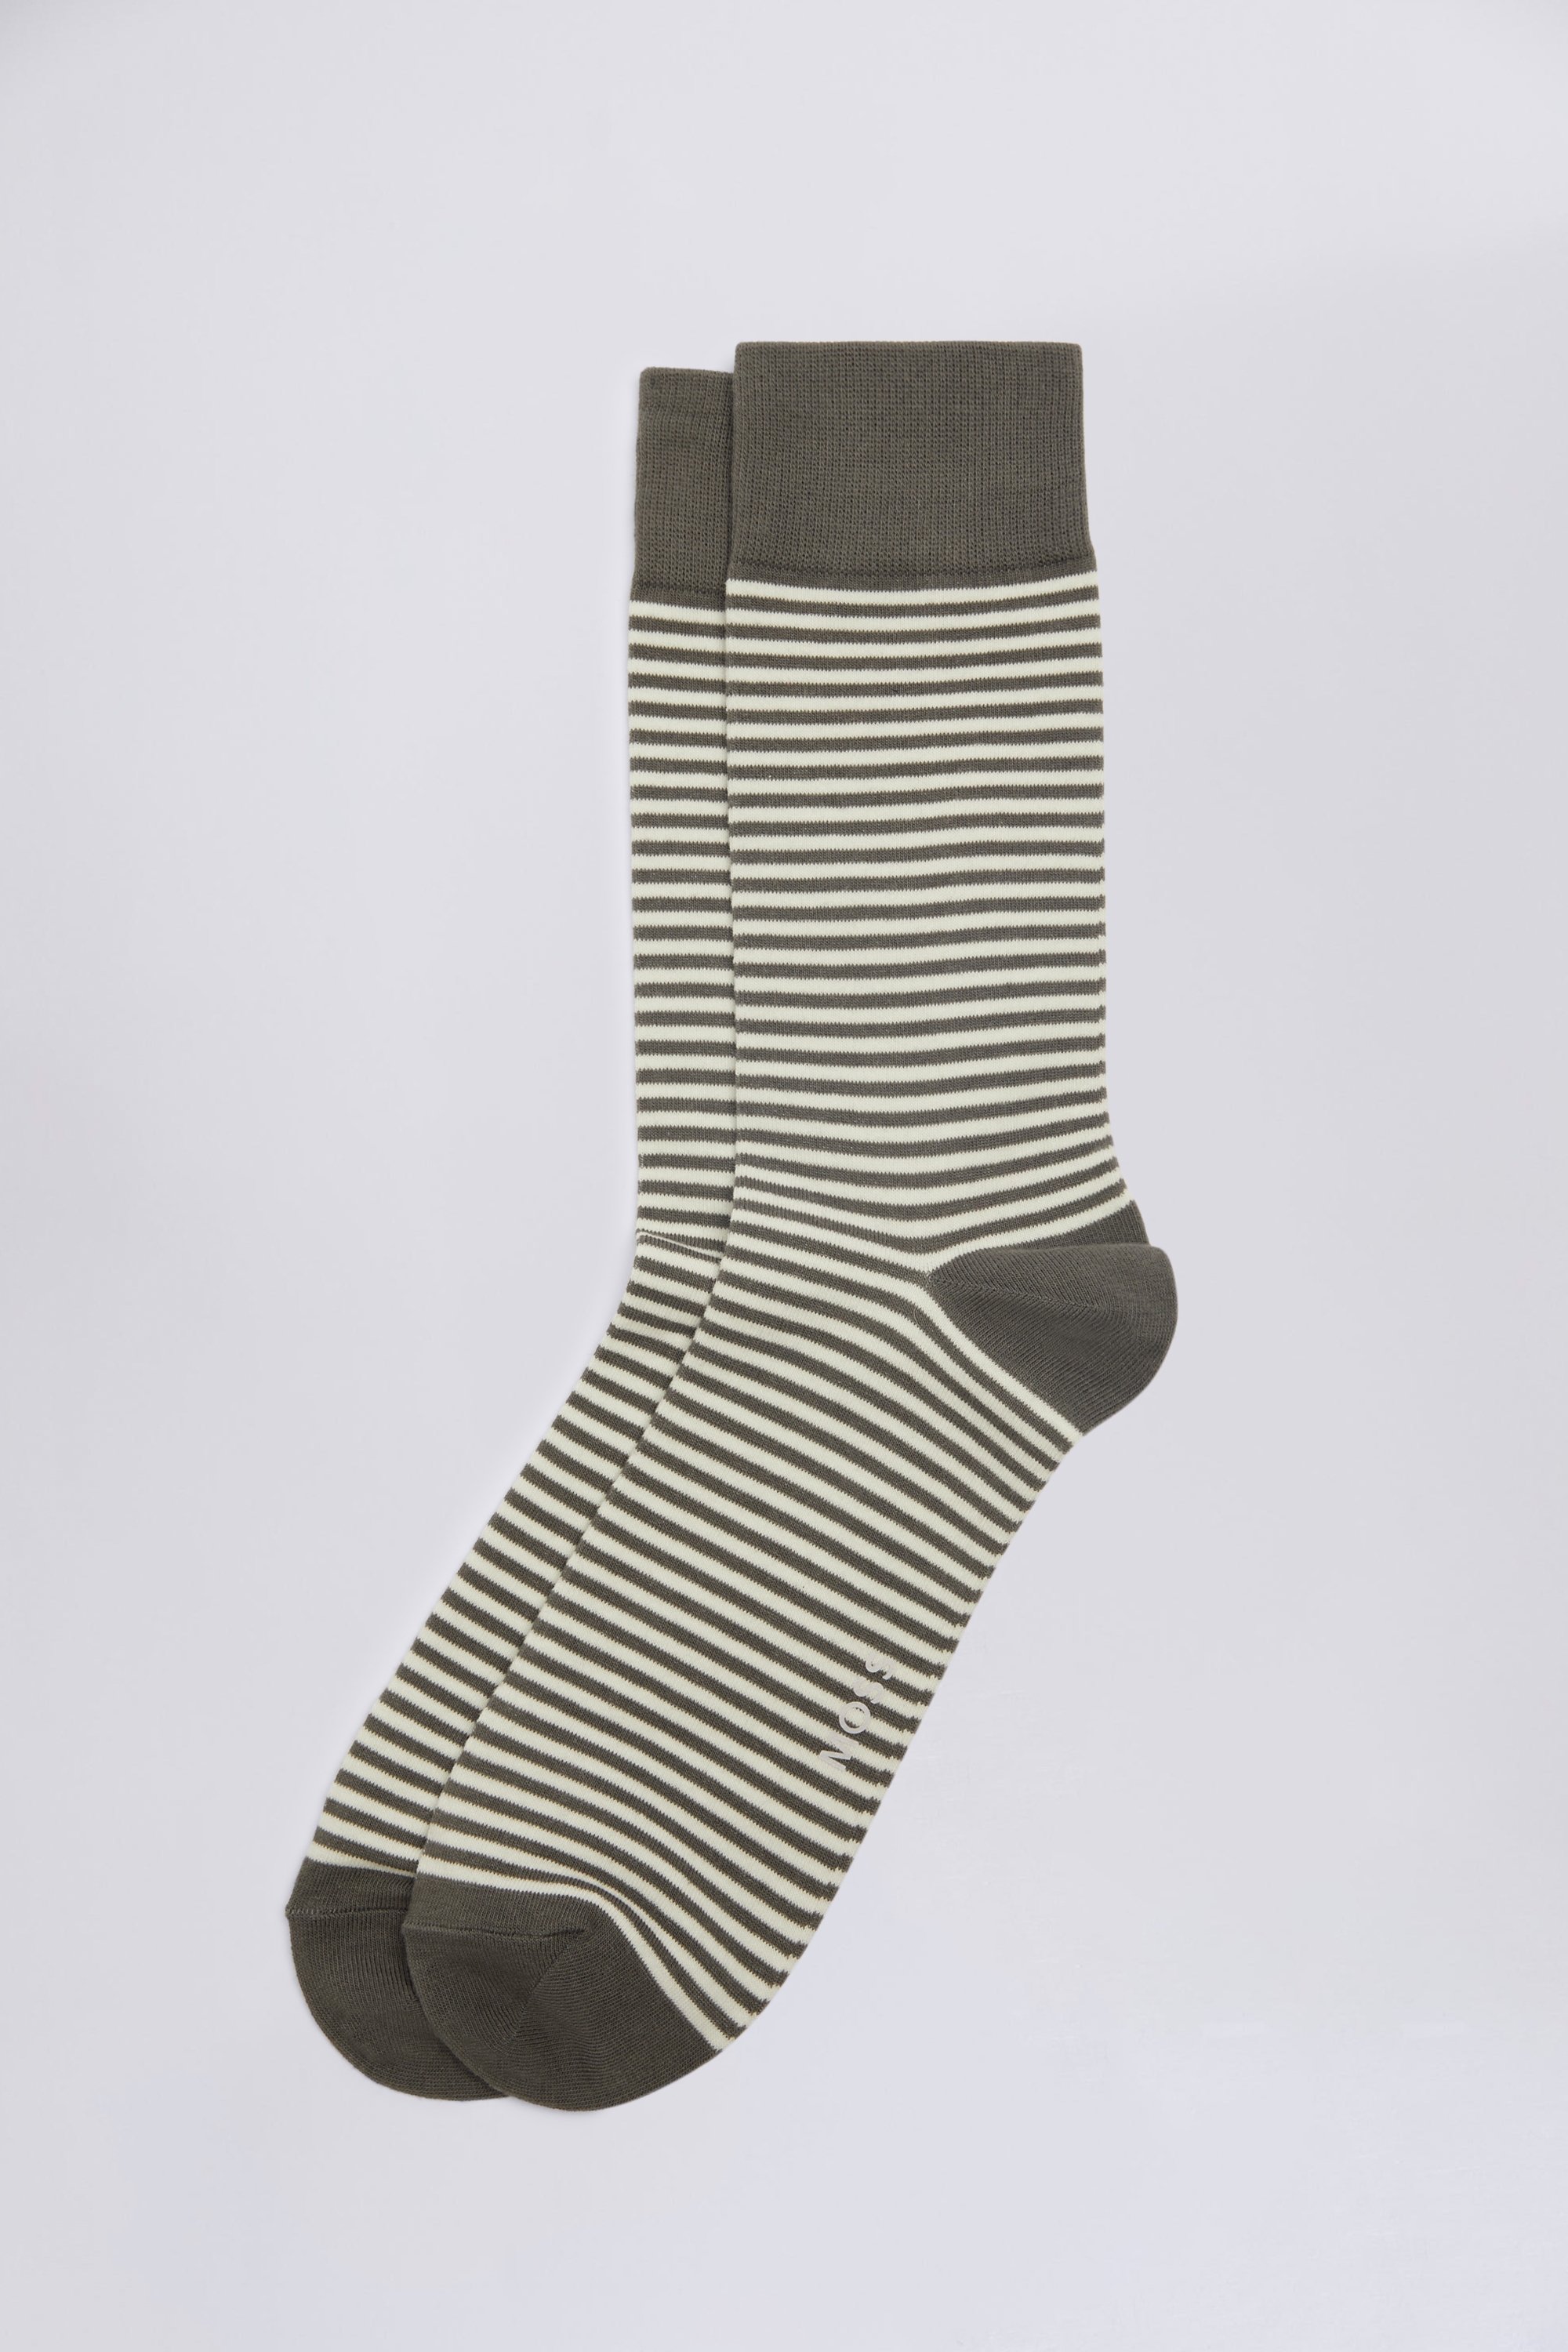 Grey & White Stripe Socks | Buy Online at Moss